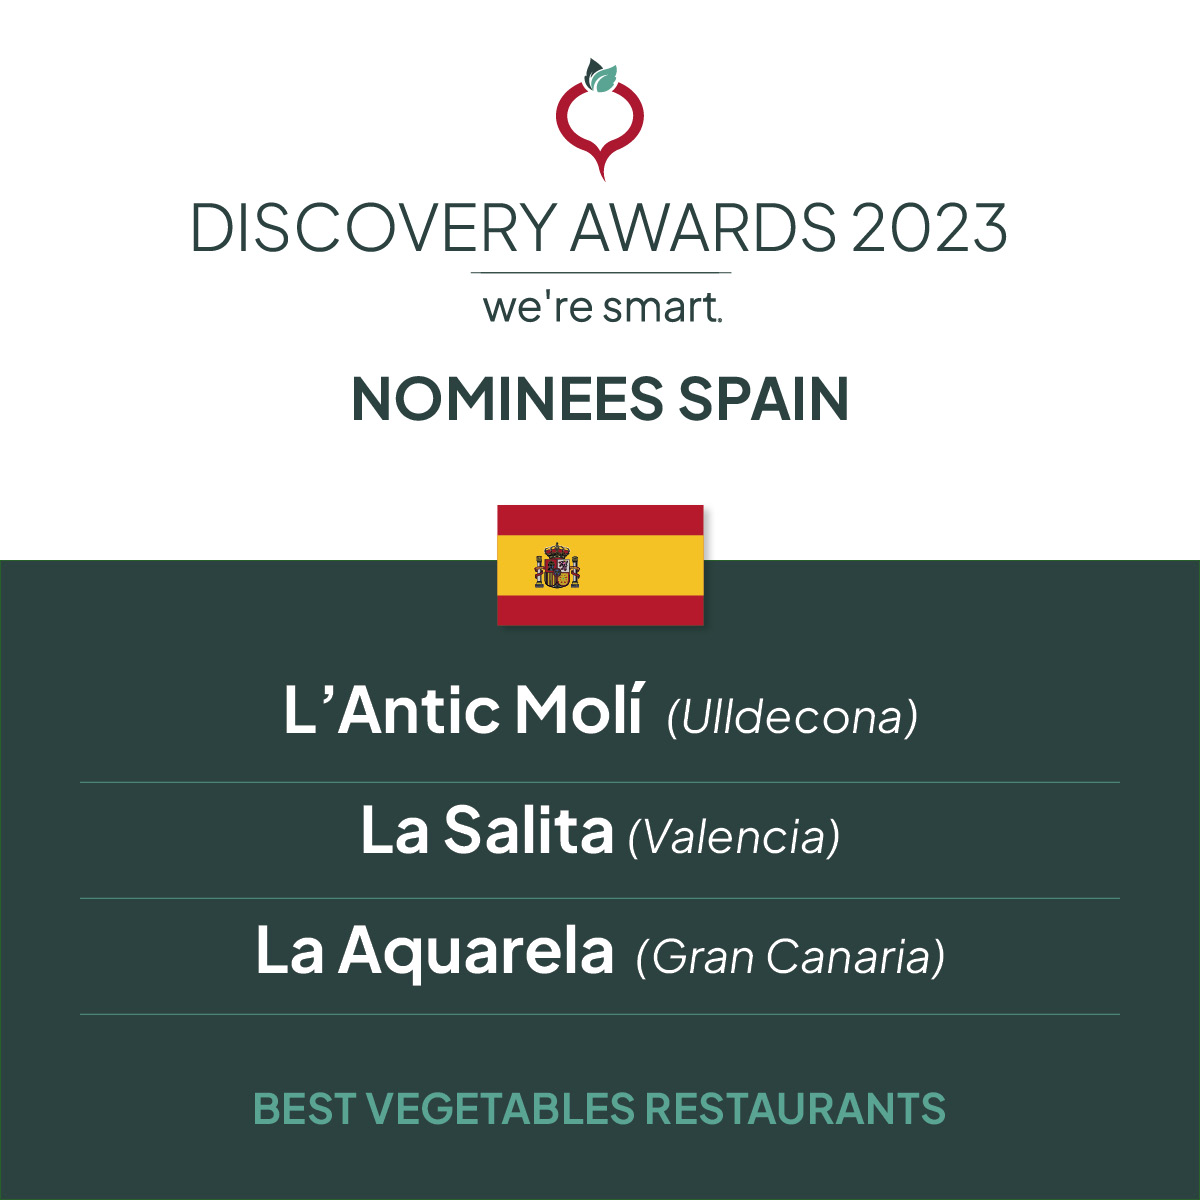 Nominees Spain